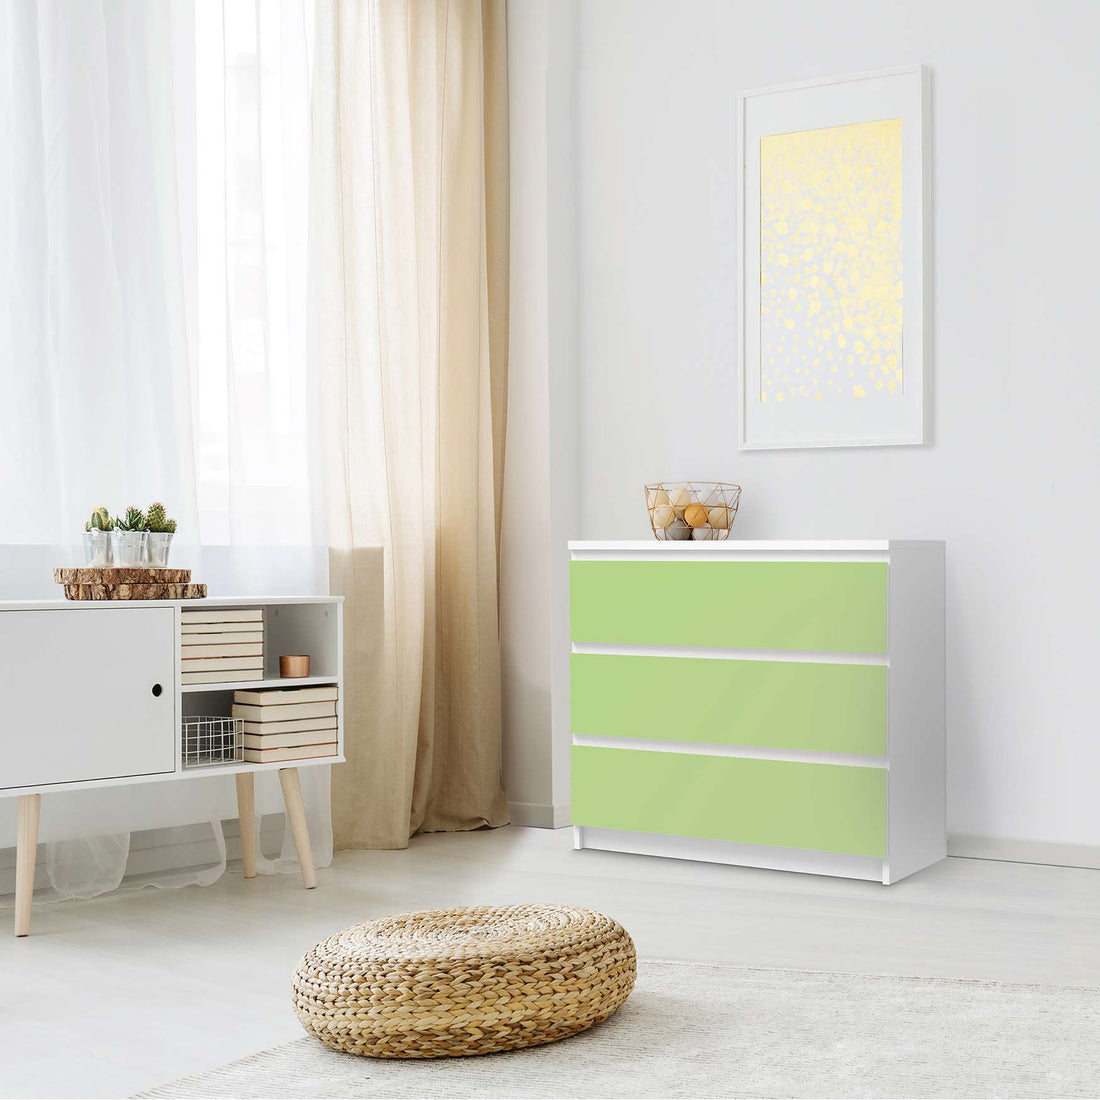 Klebefolie für Möbel Hellgrün Light - IKEA Malm Kommode 3 Schubladen - Schlafzimmer